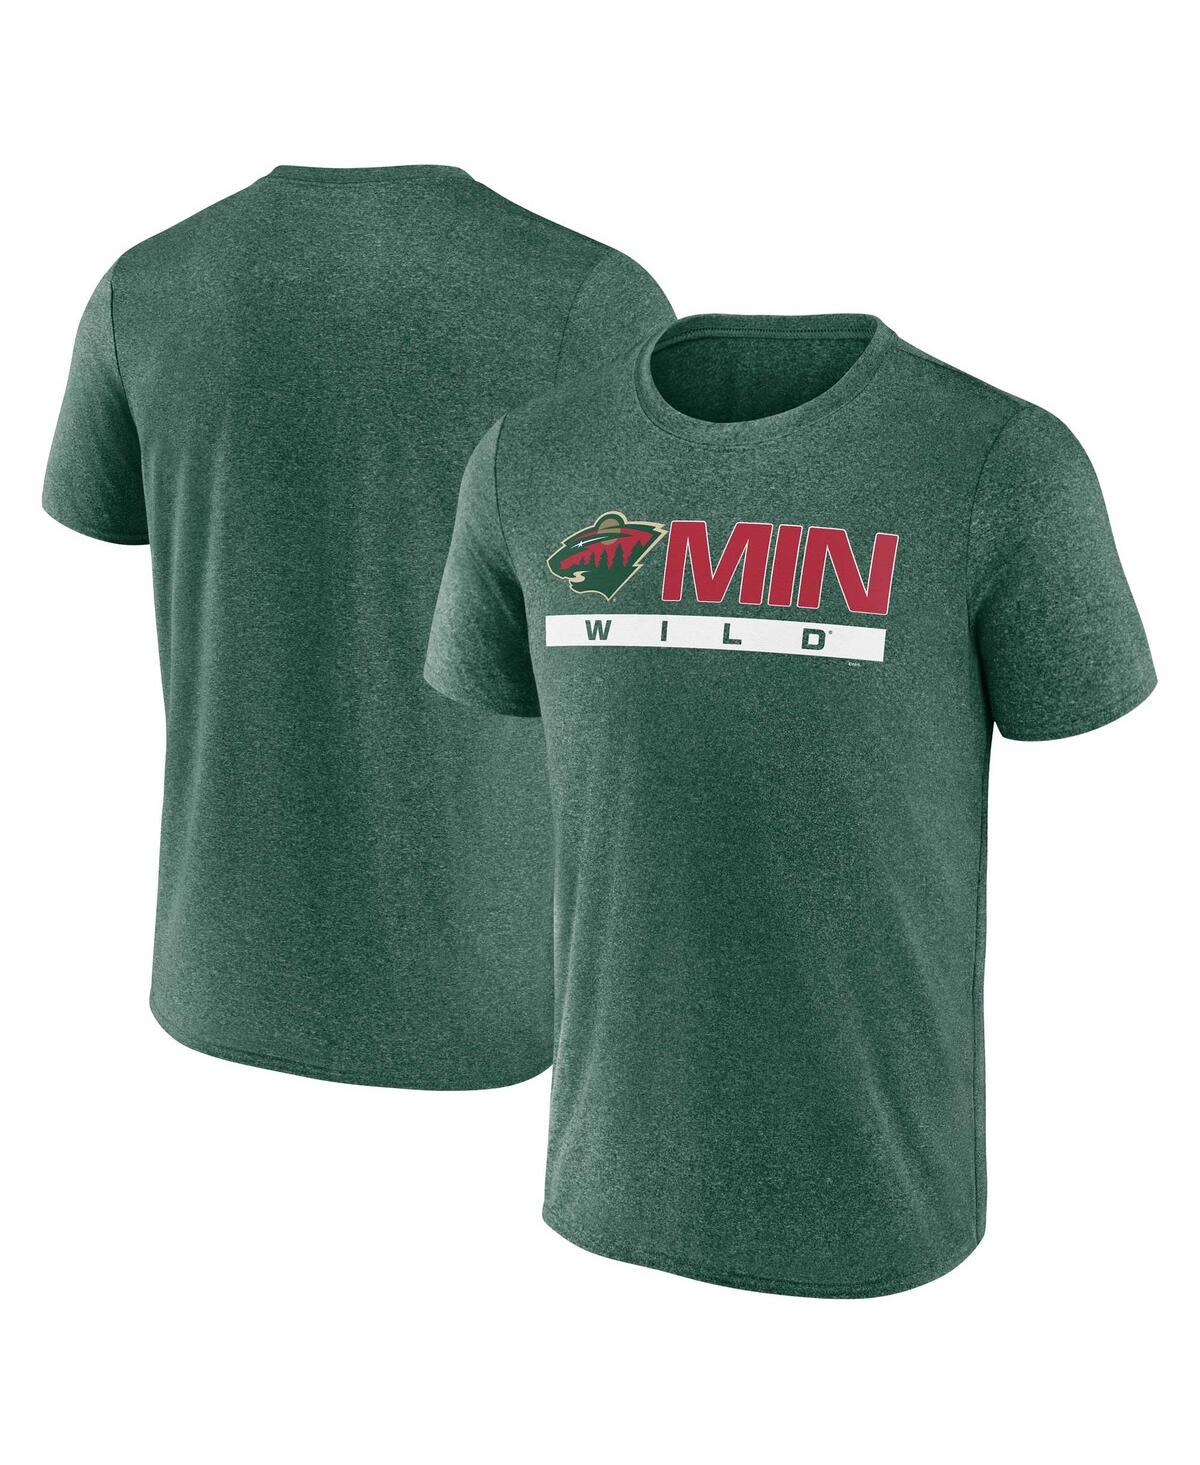 Shop Fanatics Men's  Heather Green Minnesota Wild Playmaker T-shirt